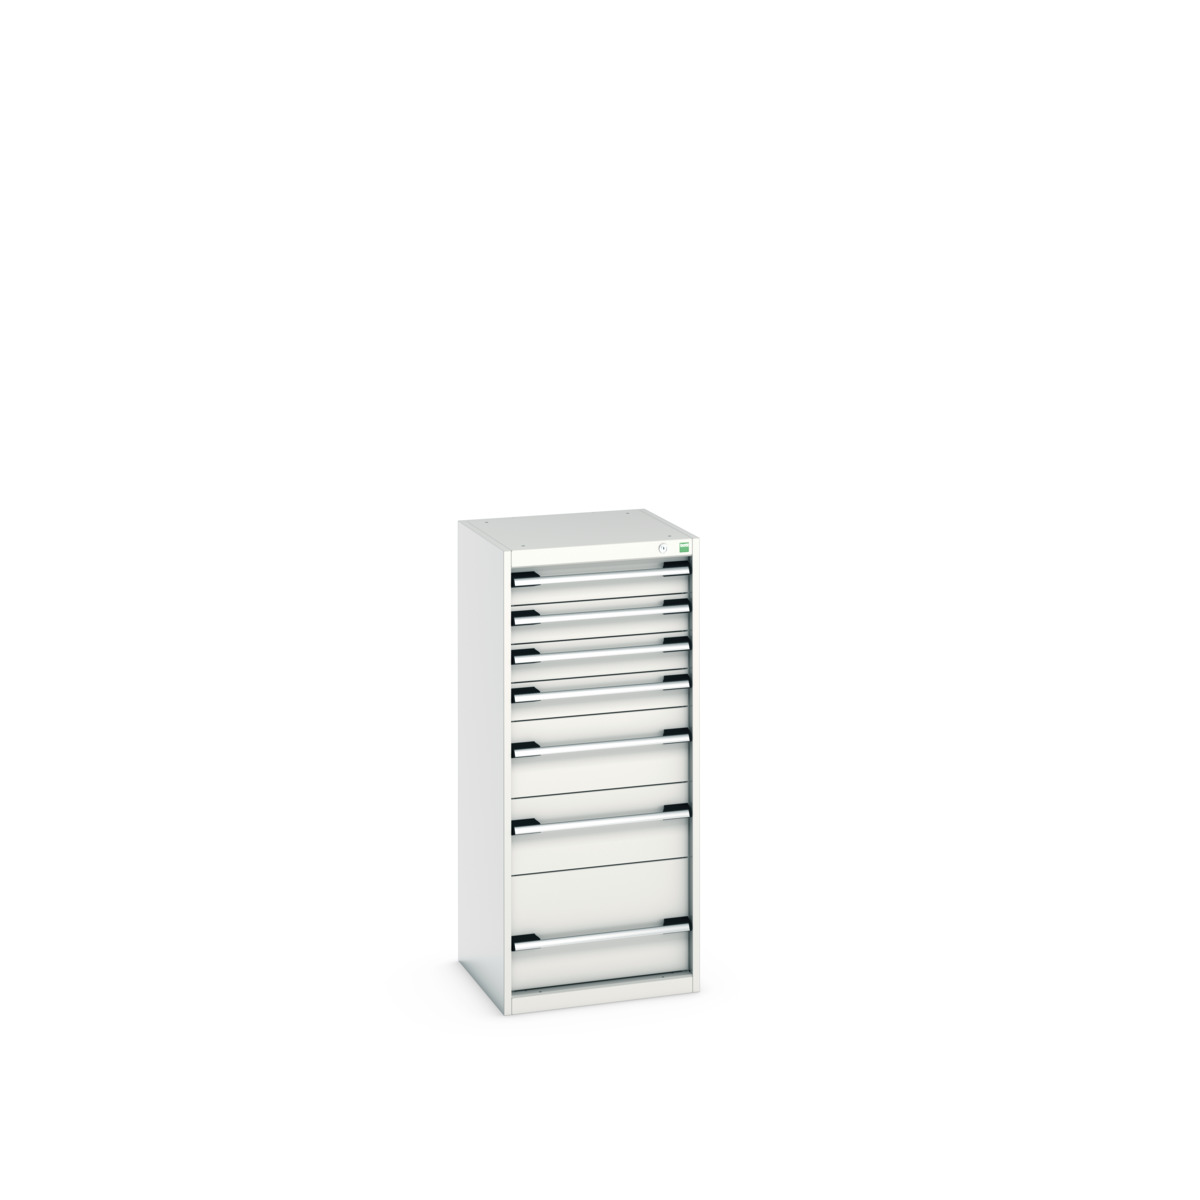 40010119.16V - cubio drawer cabinet